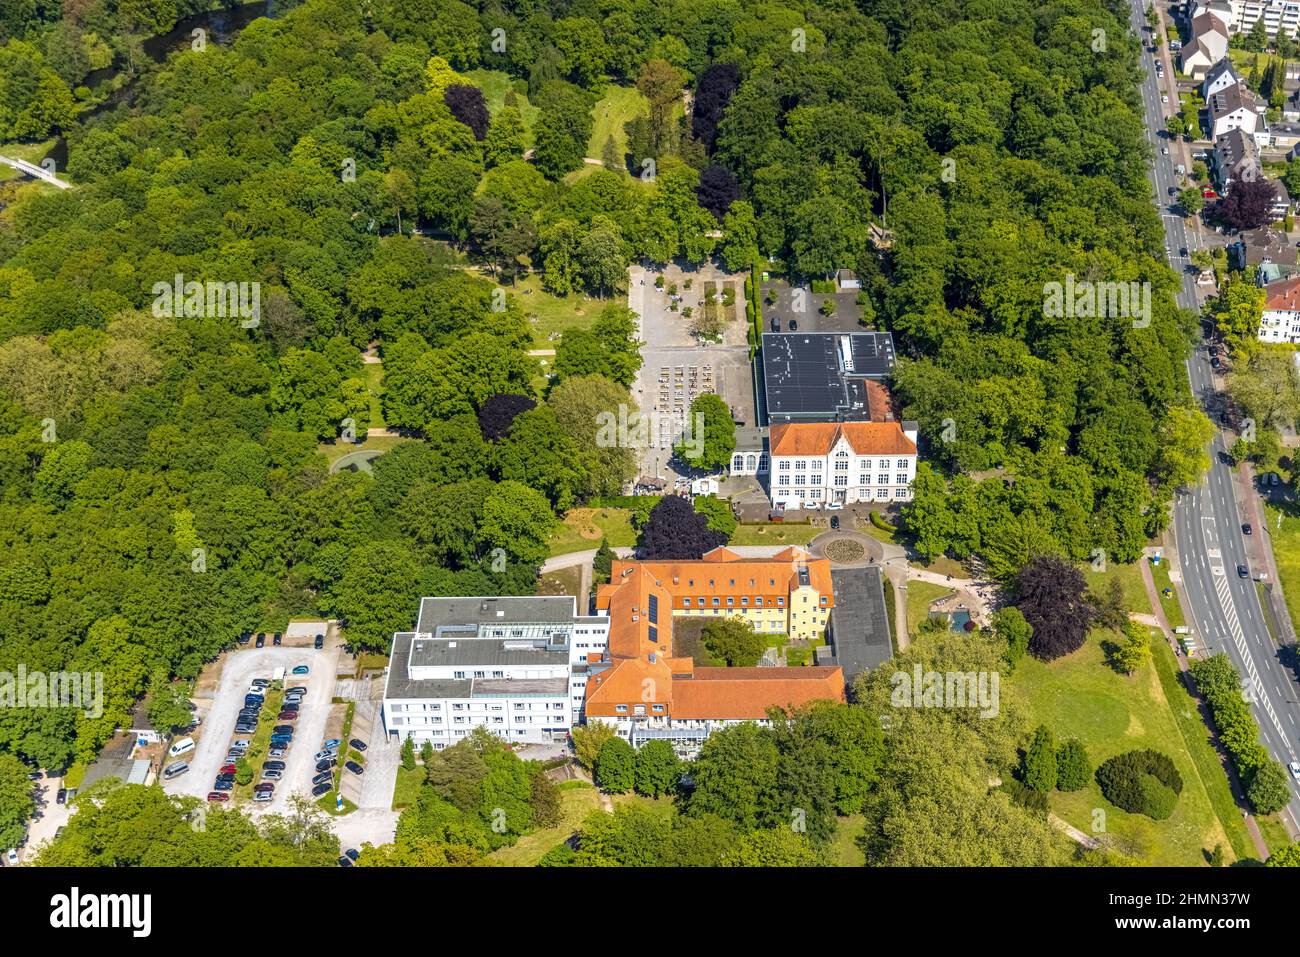 Vue aérienne de l'hôtel spa Hamm , hôtel spa Bad Hamm, le plus grand jardin de bière de Hamm, à côté de la clinique de thérapie manuelle, parc spa, Uentrop, Hamm, région de Ruhr Banque D'Images